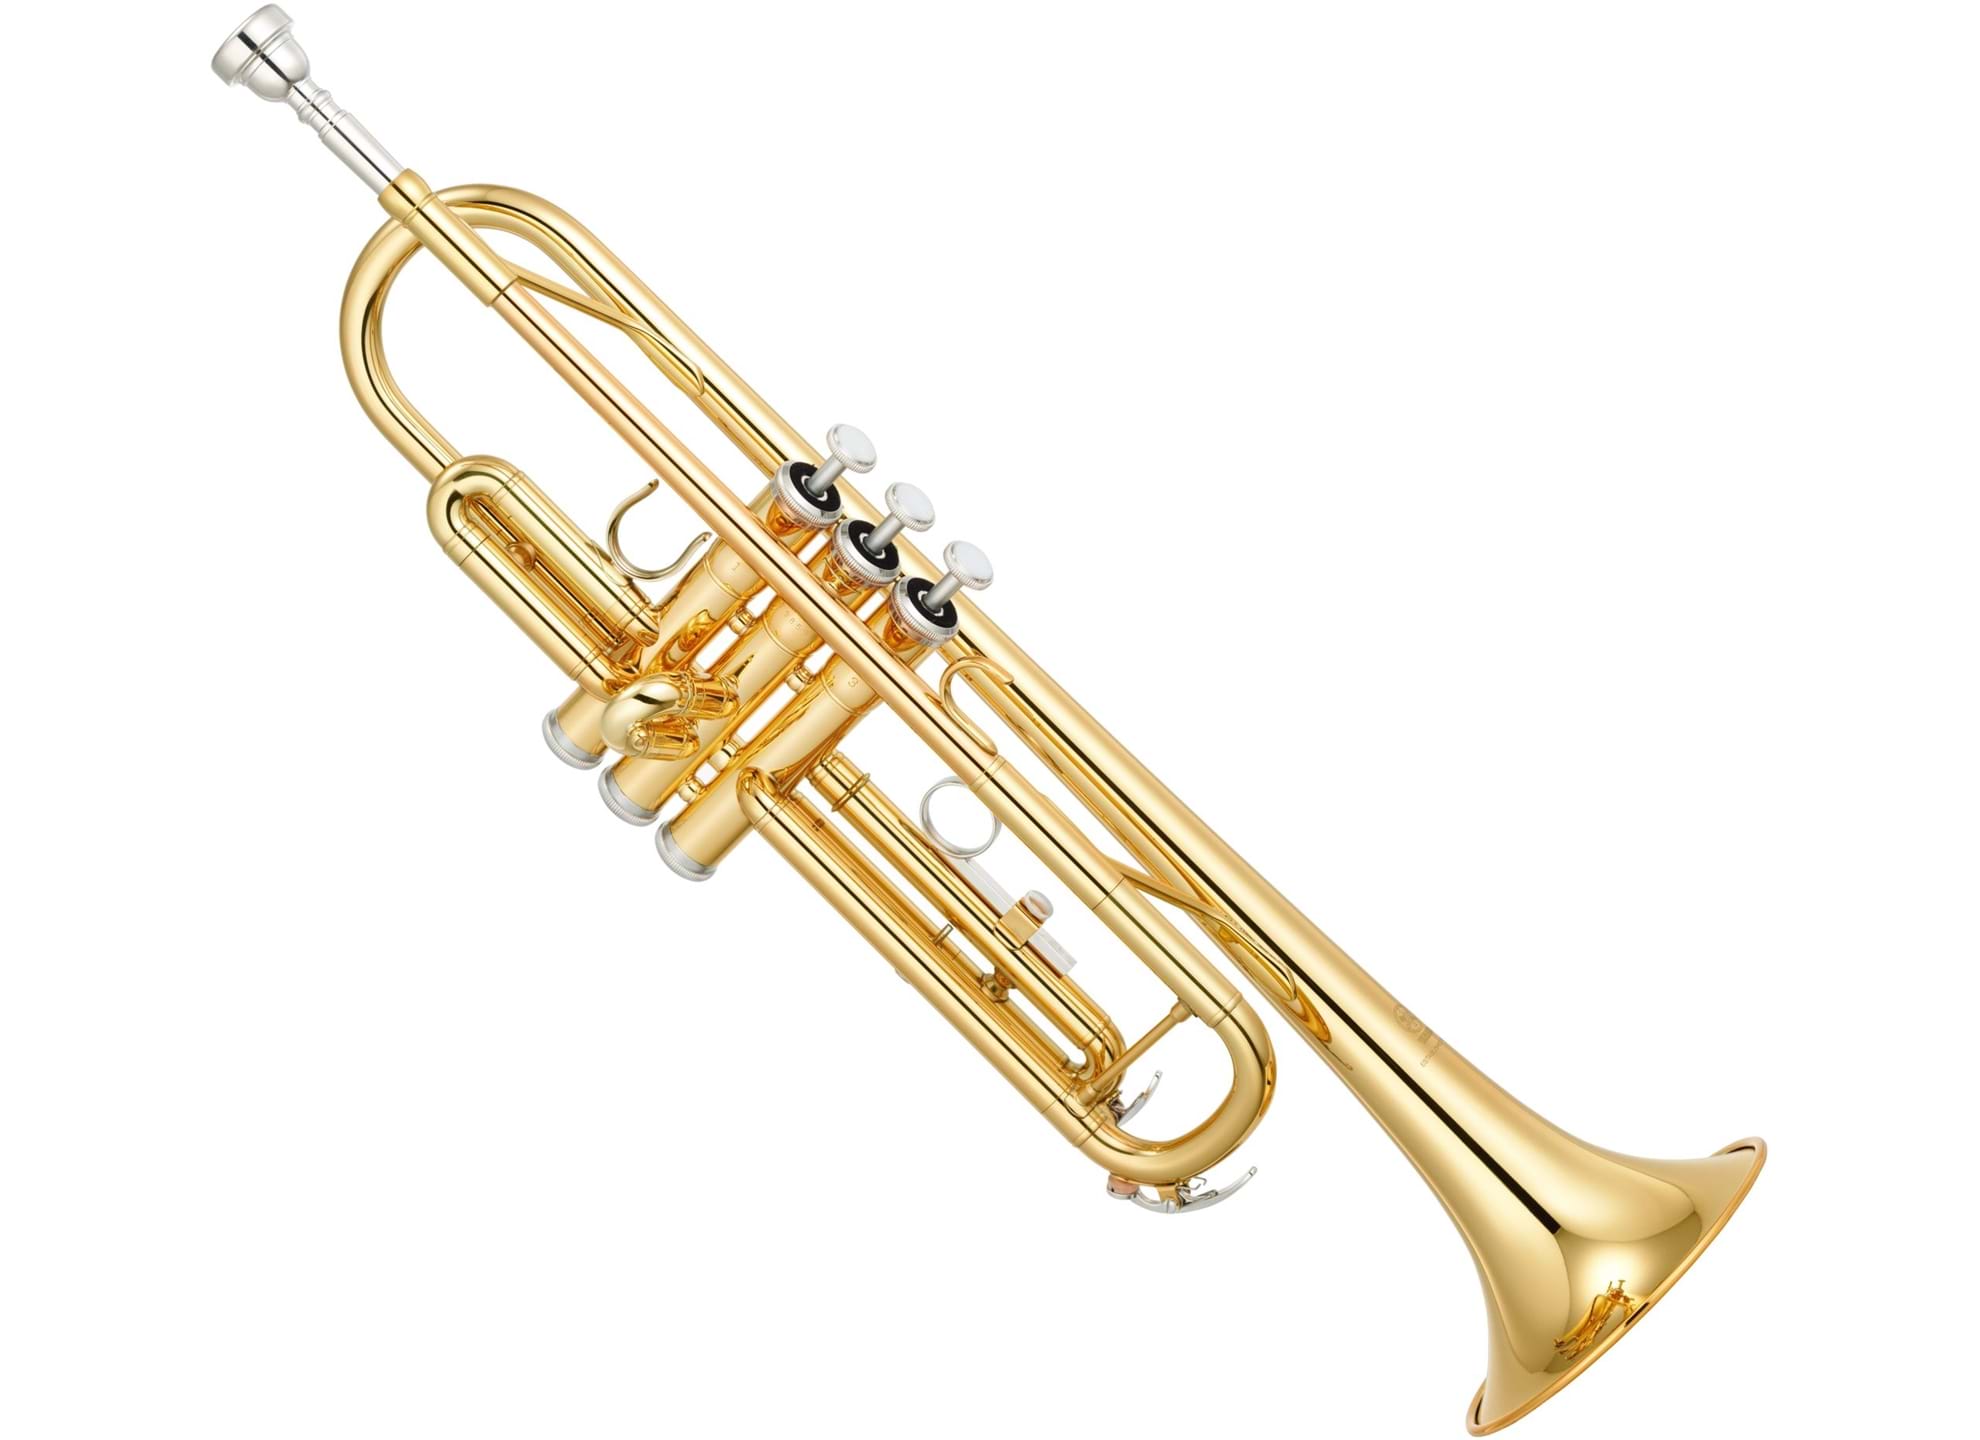 YTR-3335 Trumpet